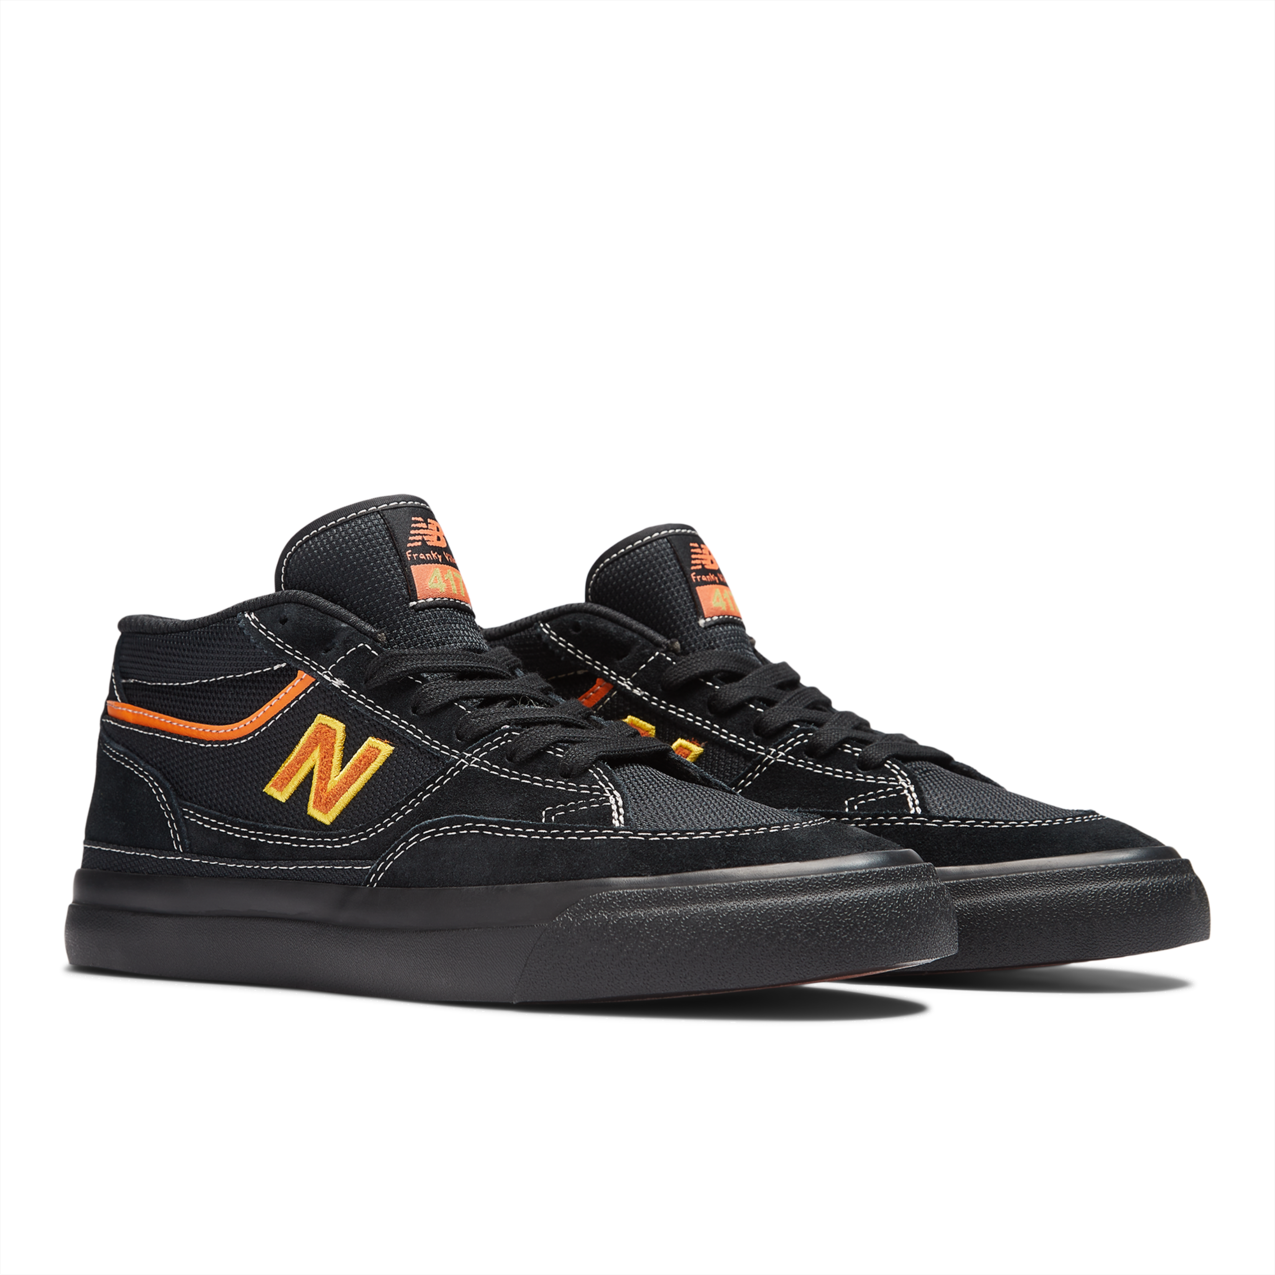 New Balance Numeric Men's Franky Villani 417 Black Orange Shoes